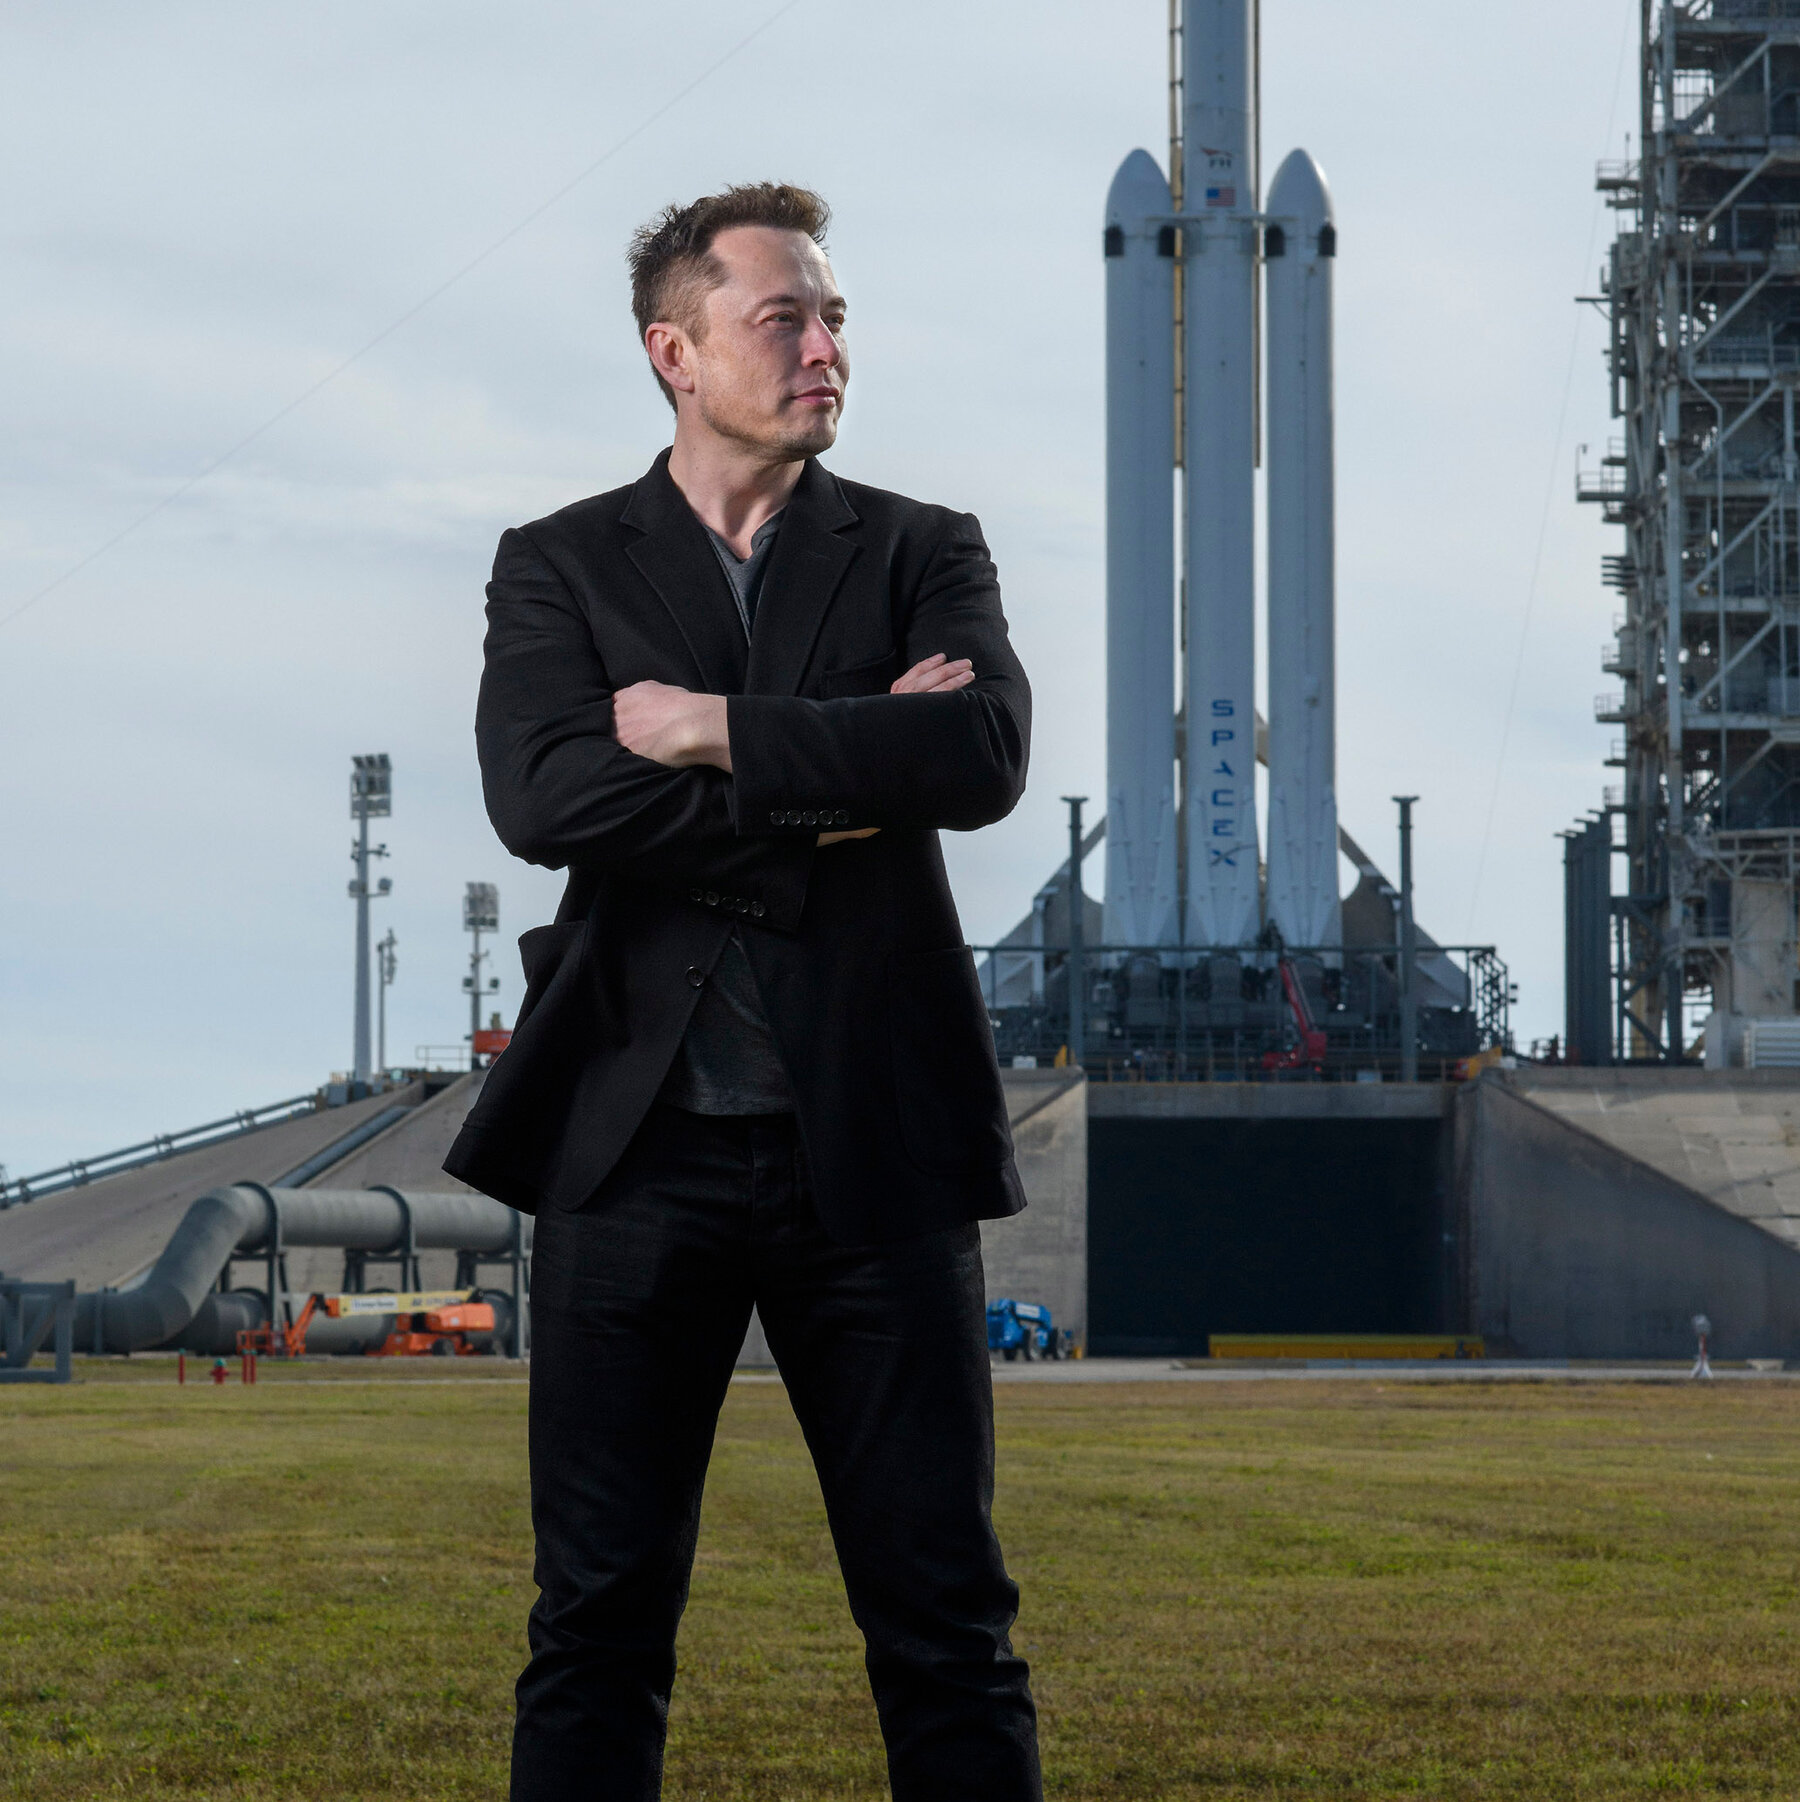 MUSC DE LA BOURSE / Rachat de Twitter : Elon Musk affirme être « toujours engagé »